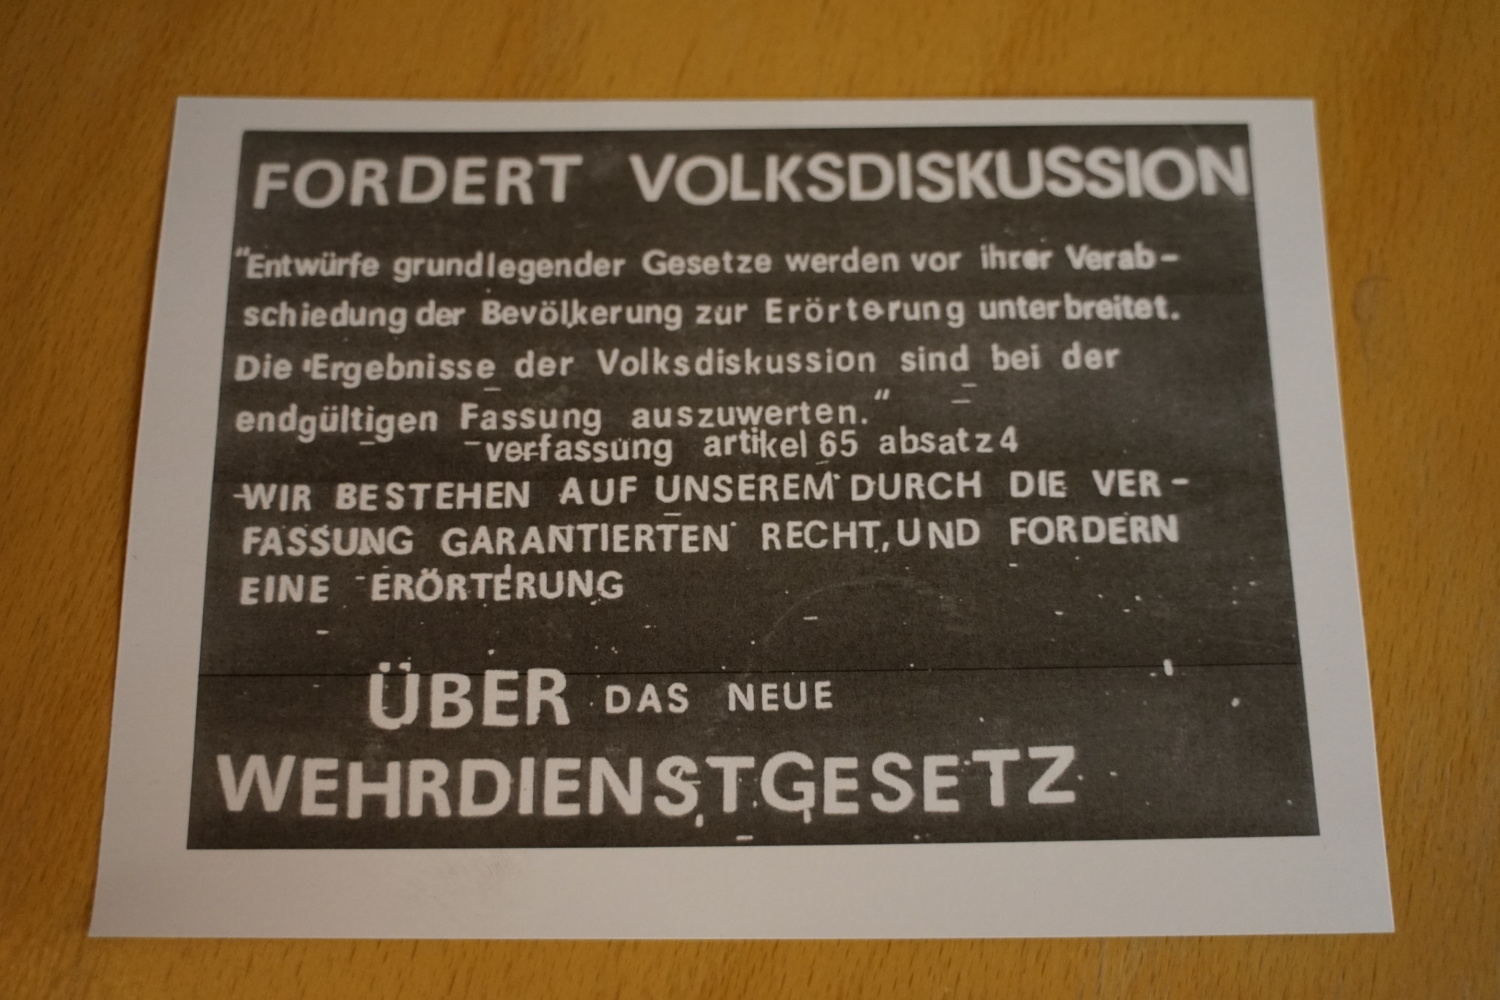 Flugblatt der DDR-Opposition in Ost-Berlin mit der Forderungen einer öffentlichen Erörterung des neuen Wehrdienstgesetzes von 1982